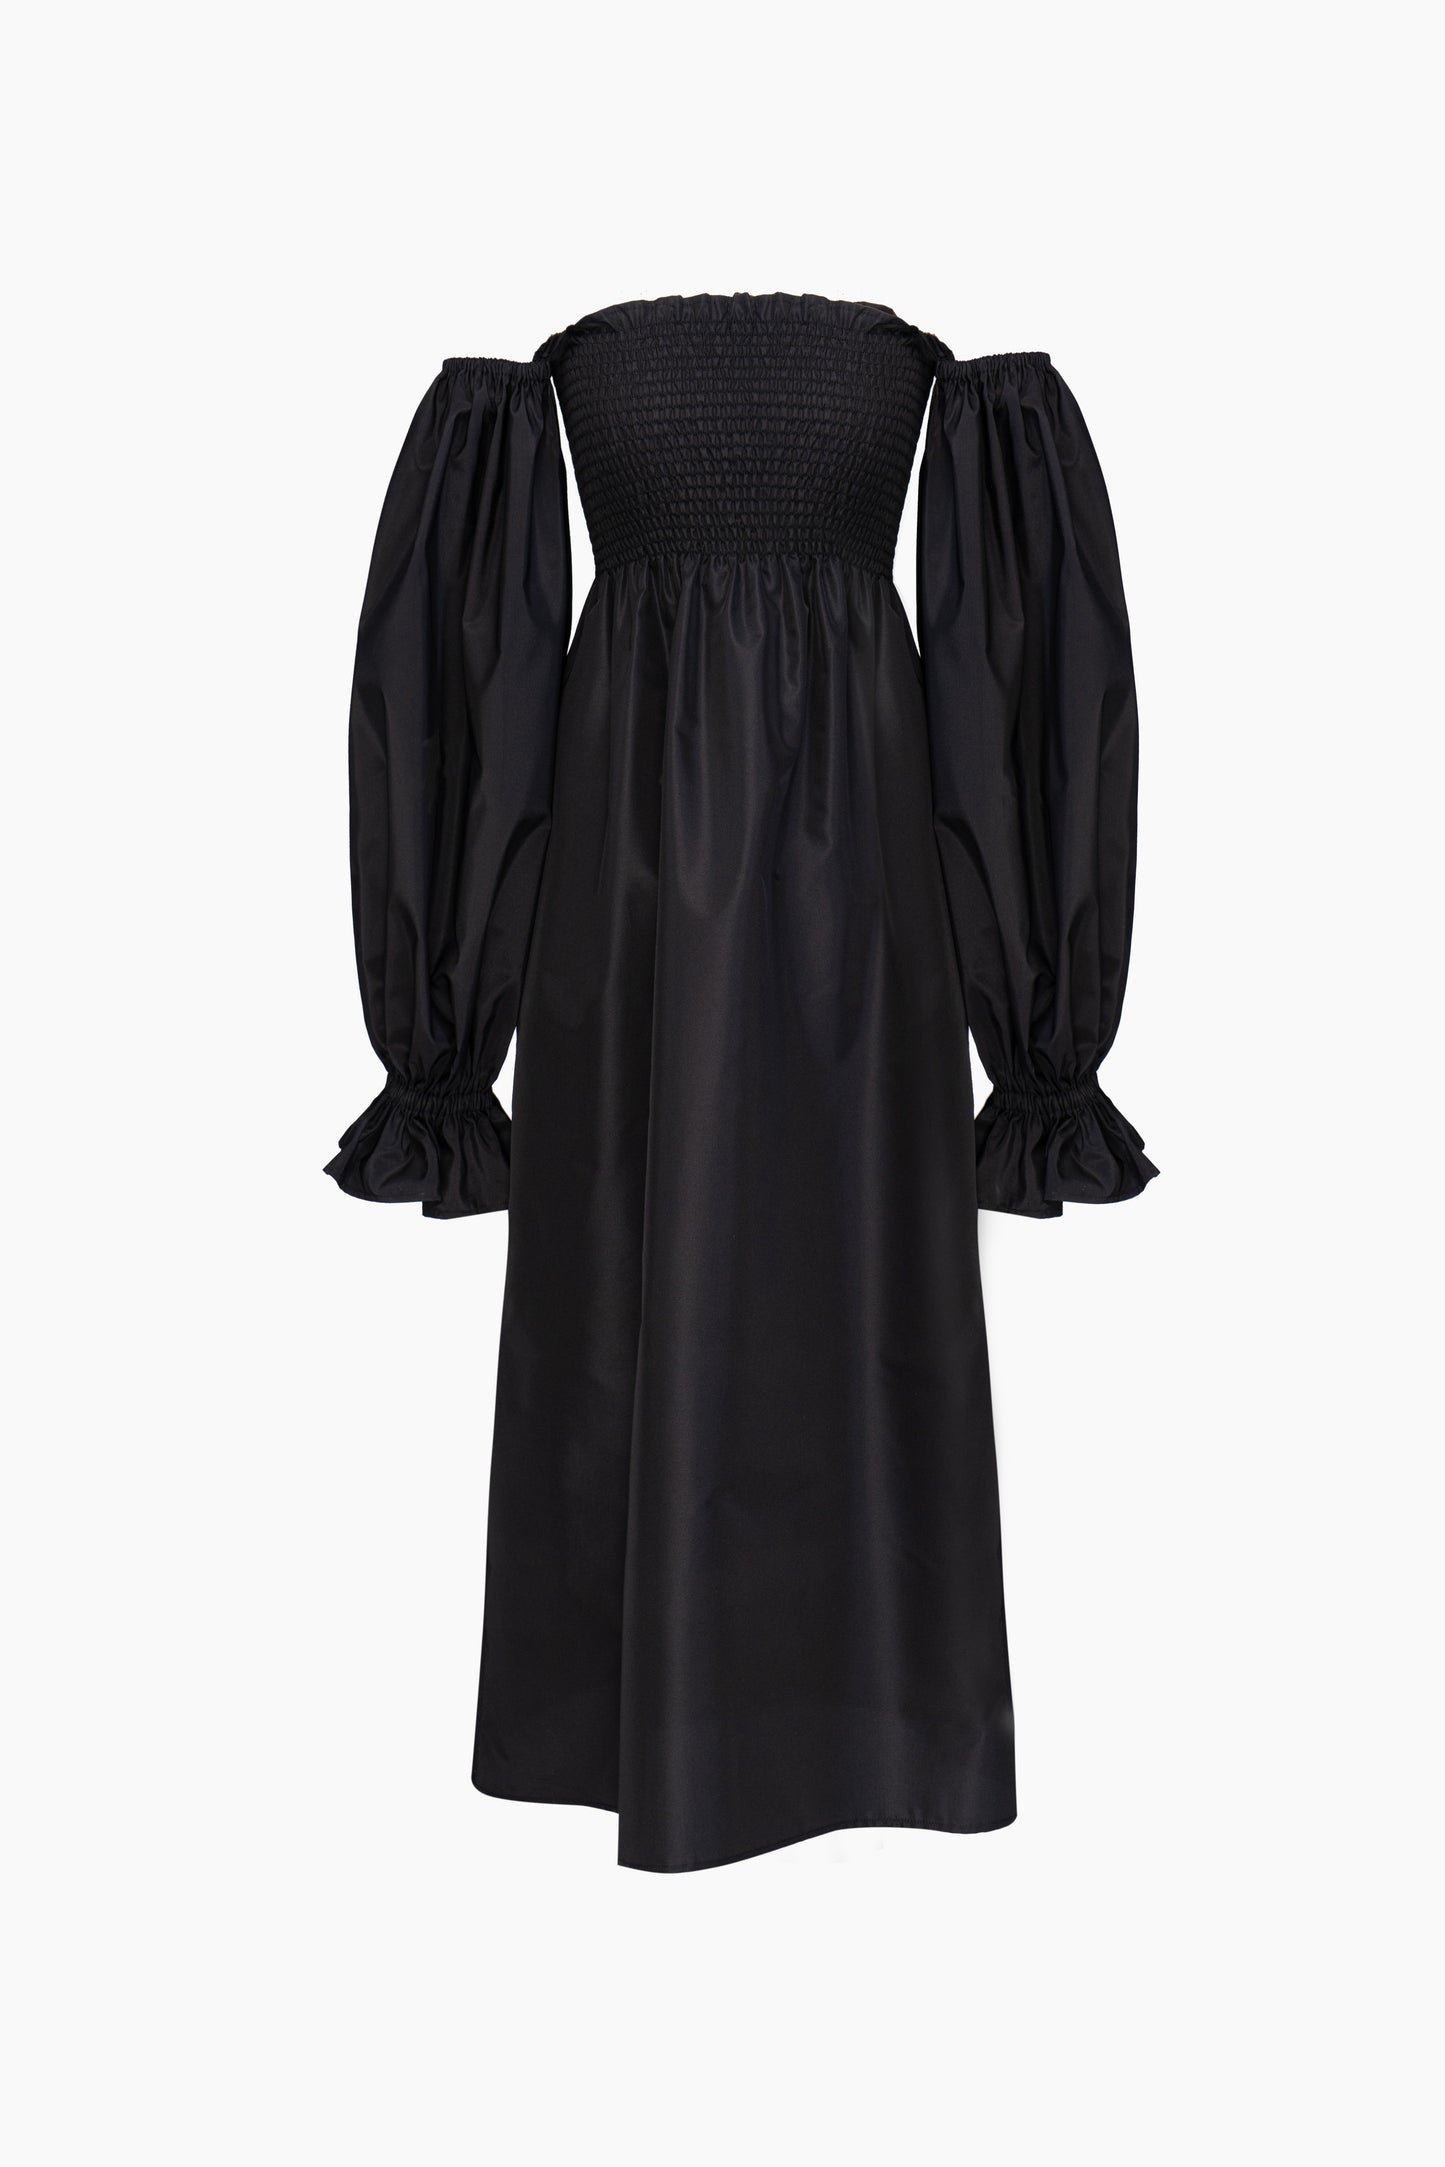 Atlanta Satin Crepe Dress in Black